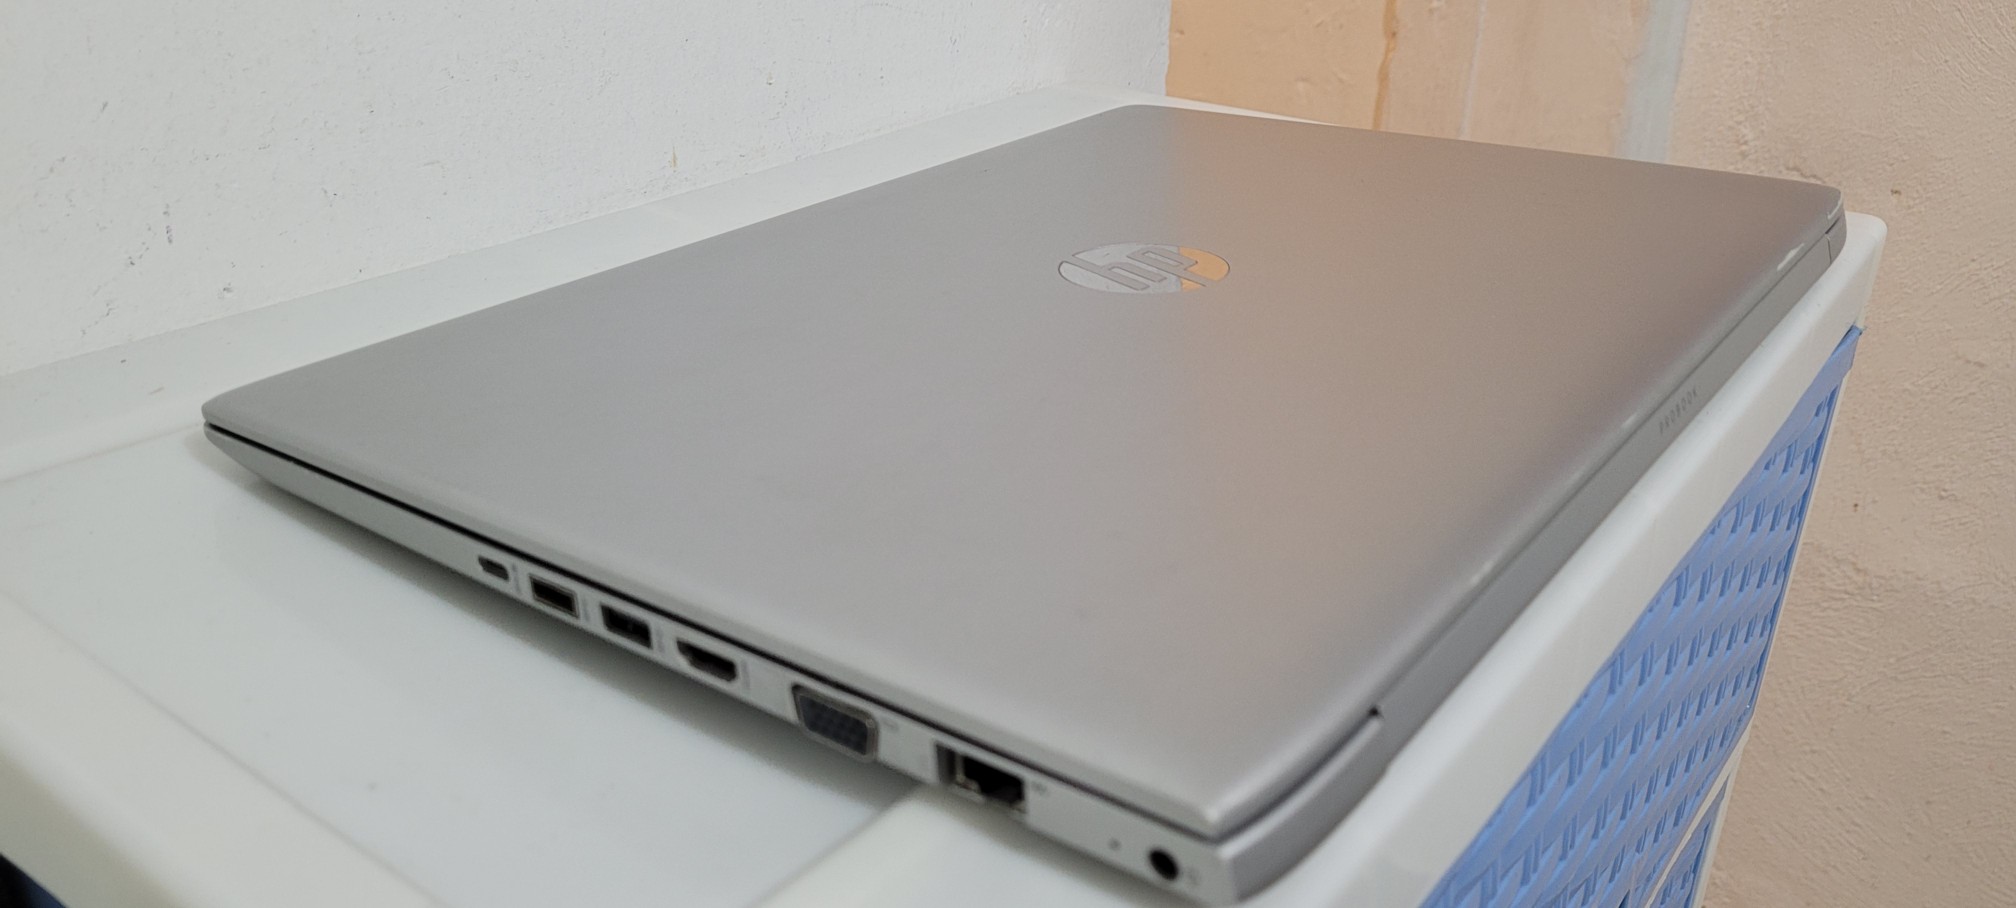 computadoras y laptops - Laptop hp G4 17 Pulg Core i7 Core i7 8va Gen Ram 16gb ddr4 Disco 512gb Video 8gb 2